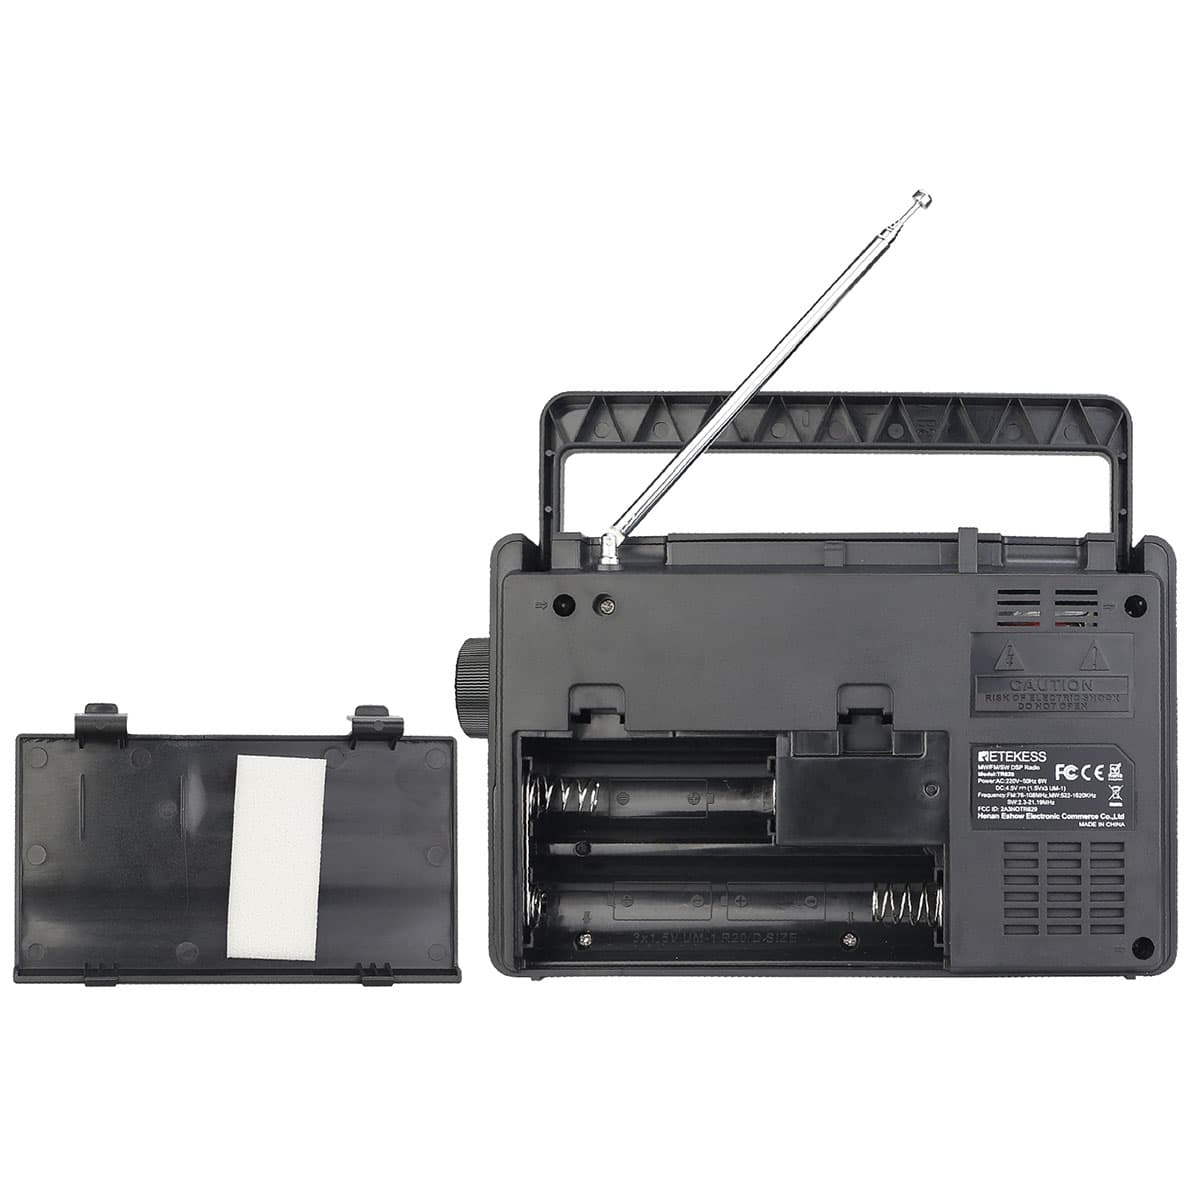  Retekess TR629 Radios portátiles de onda corta, radio digital  AM FM enchufe con DSP, soporte retroiluminación pantalla LCD, sintonización  digital y preajuste, USB, Micro SD, reloj, grabadora : Electrónica